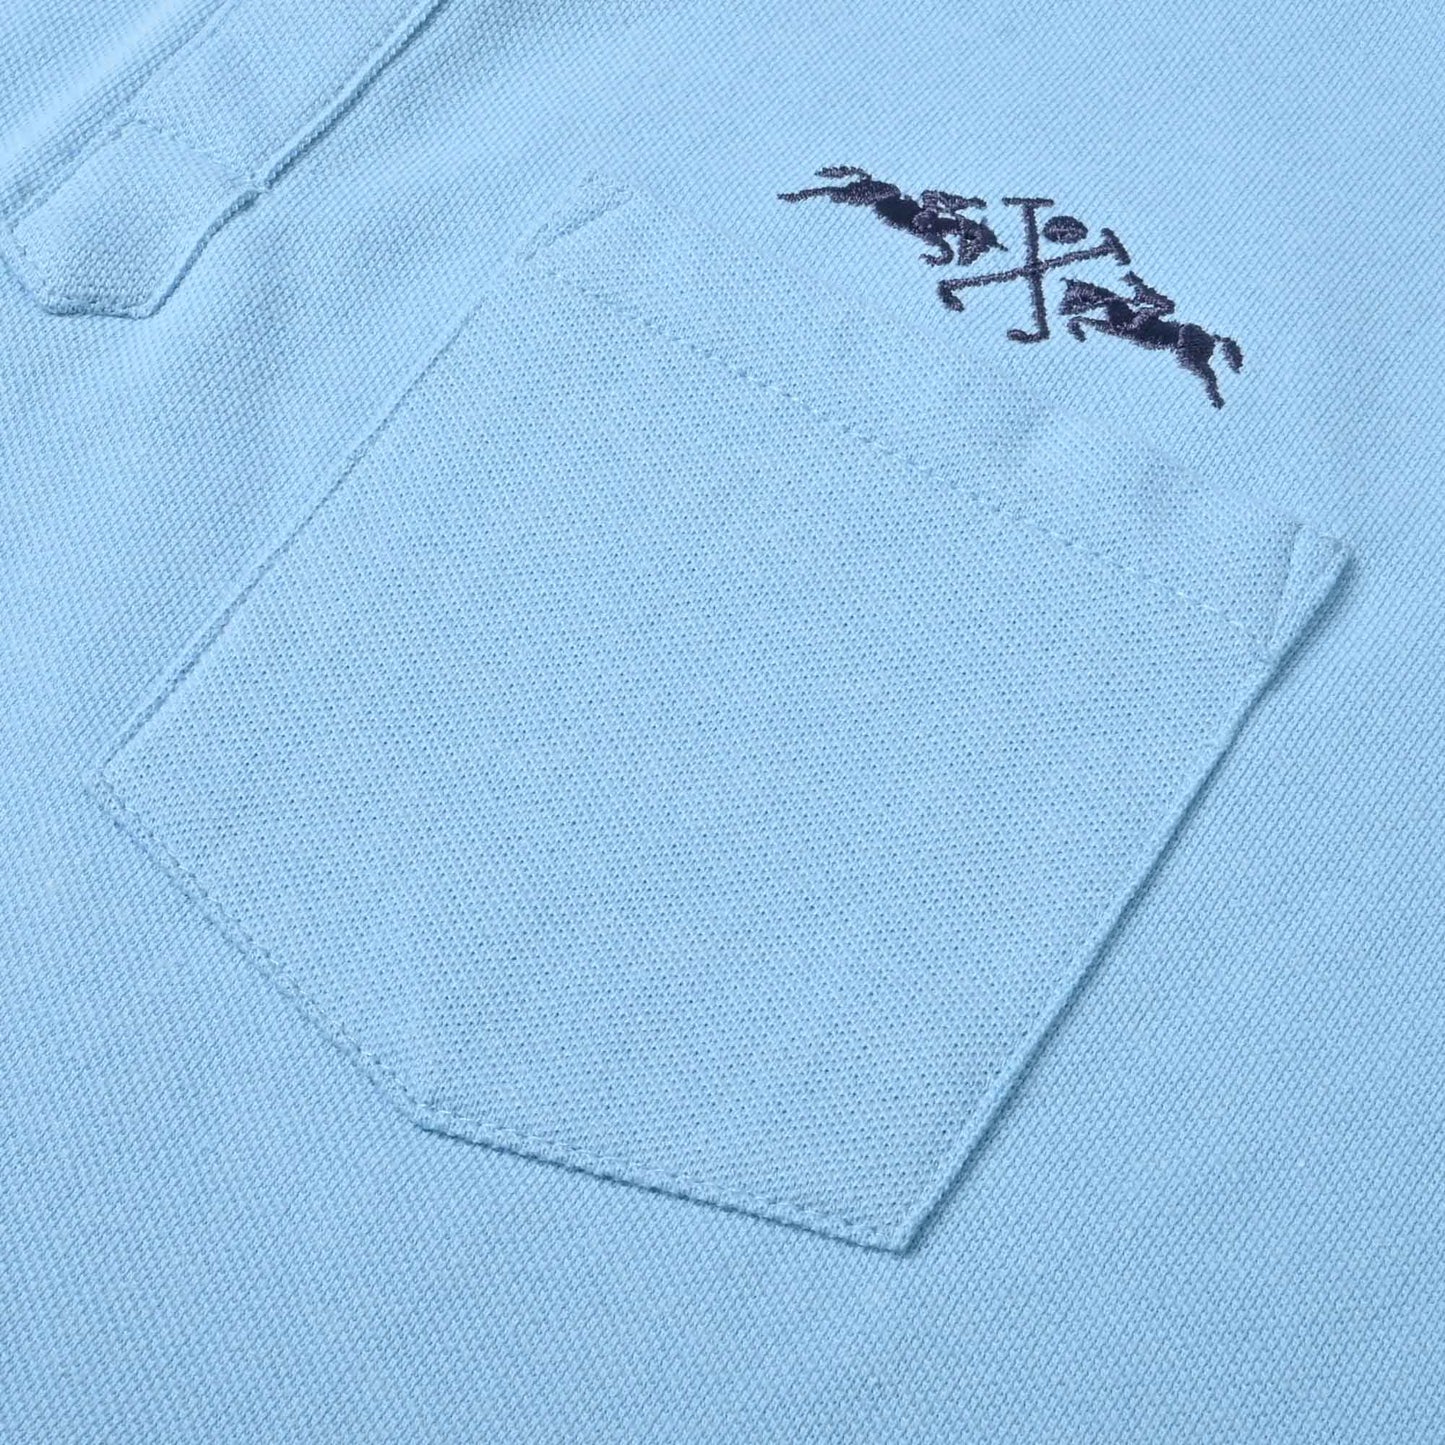 Polo Republica Men's Double Pony 8 & England Flag Embroidered Pocket Polo Shirt Men's Polo Shirt Polo Republica 